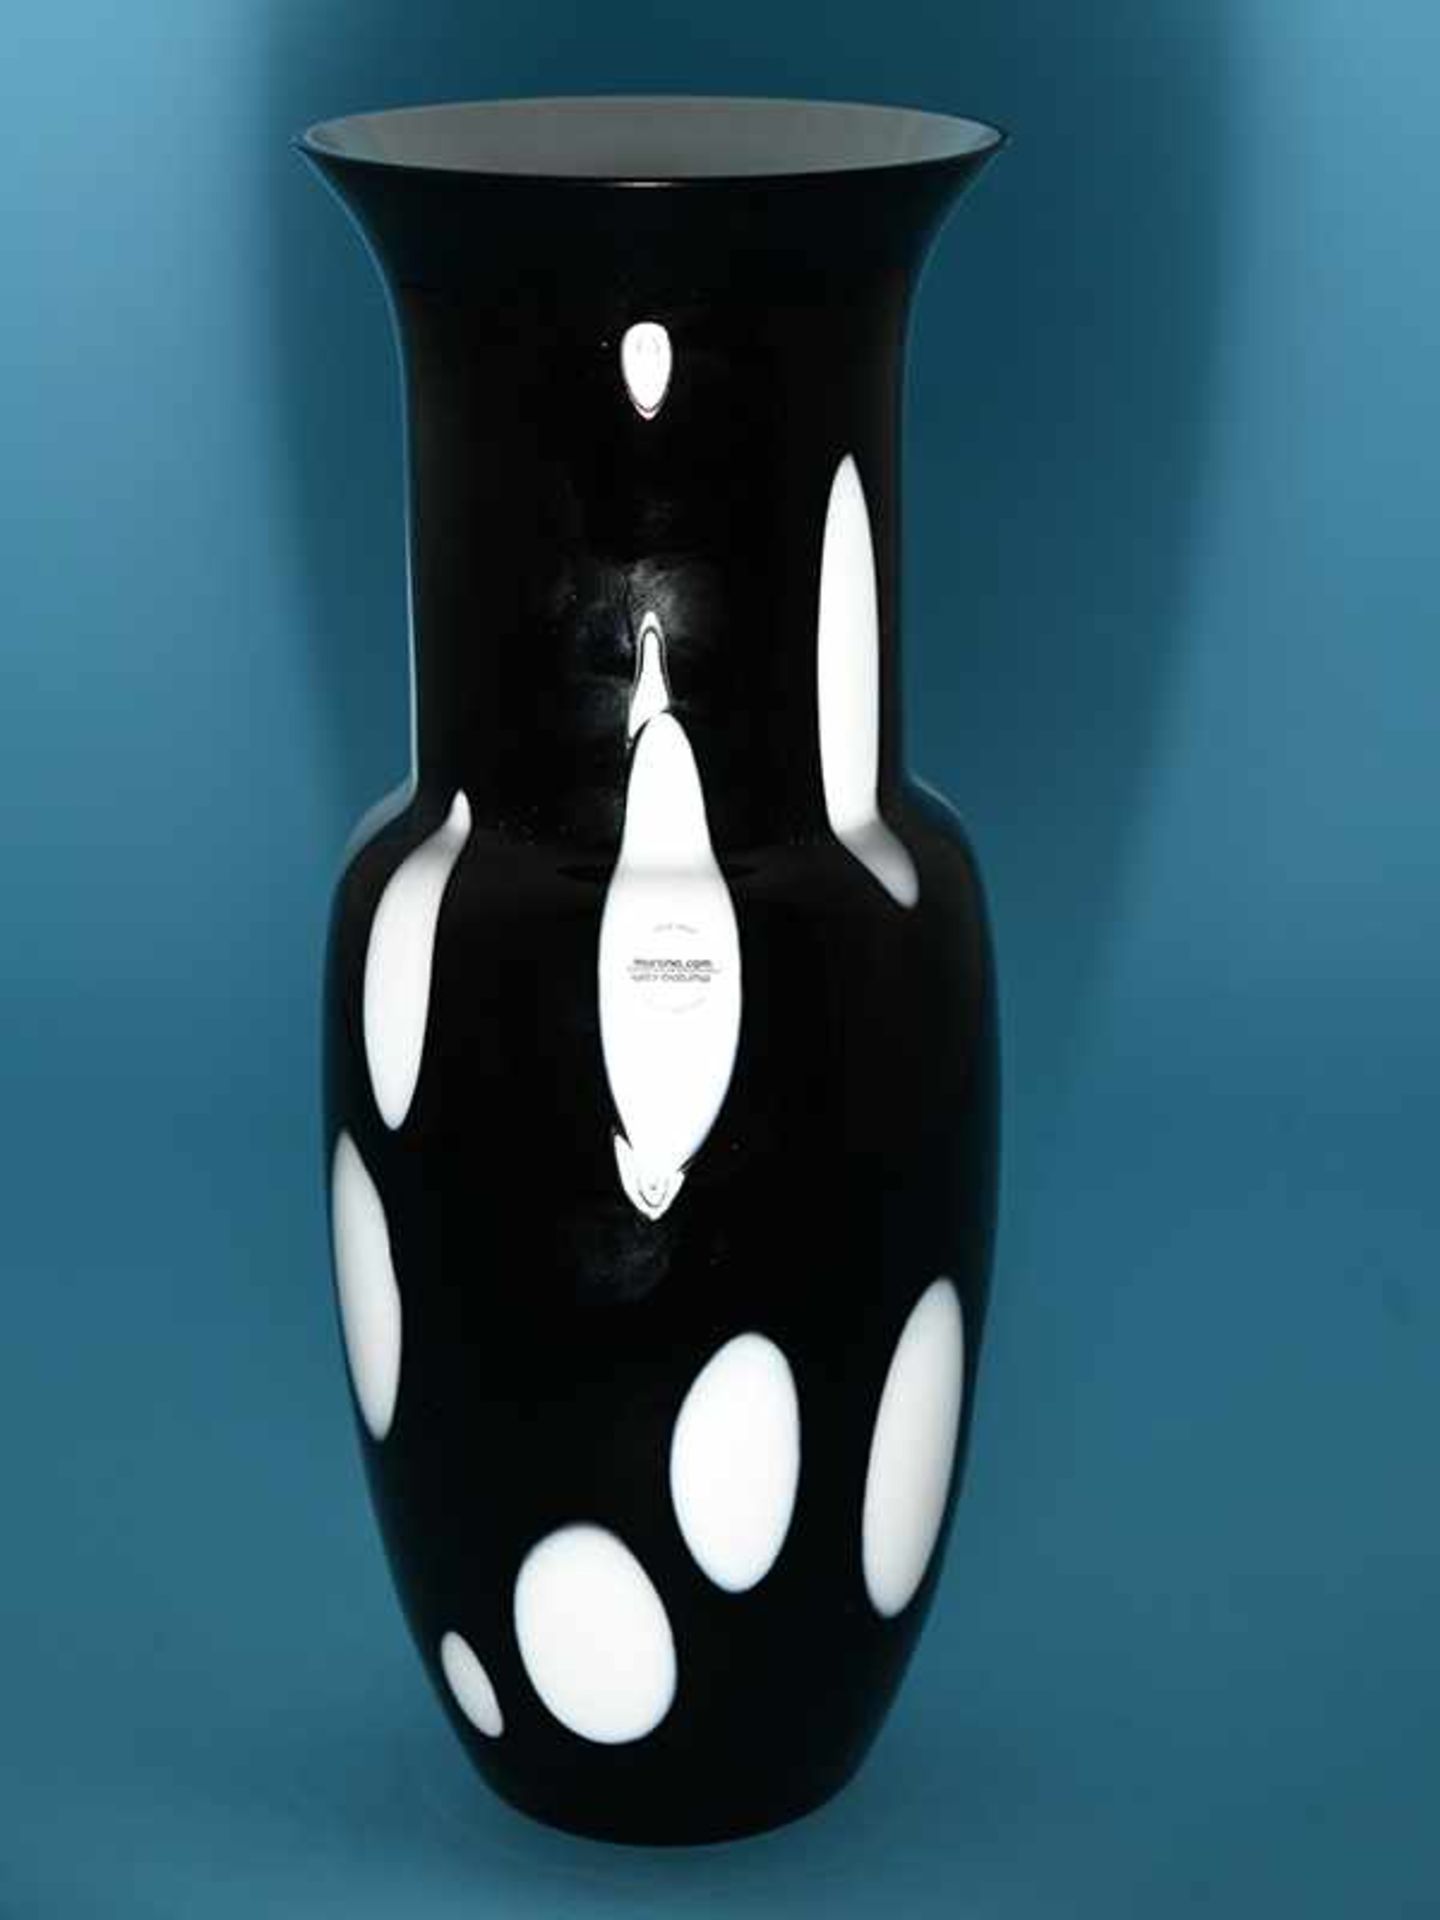 Große Vase, "murano.com"/Murano, Anfang 21. Jh. Schwarzes Muranoglas in einer Form, die an die